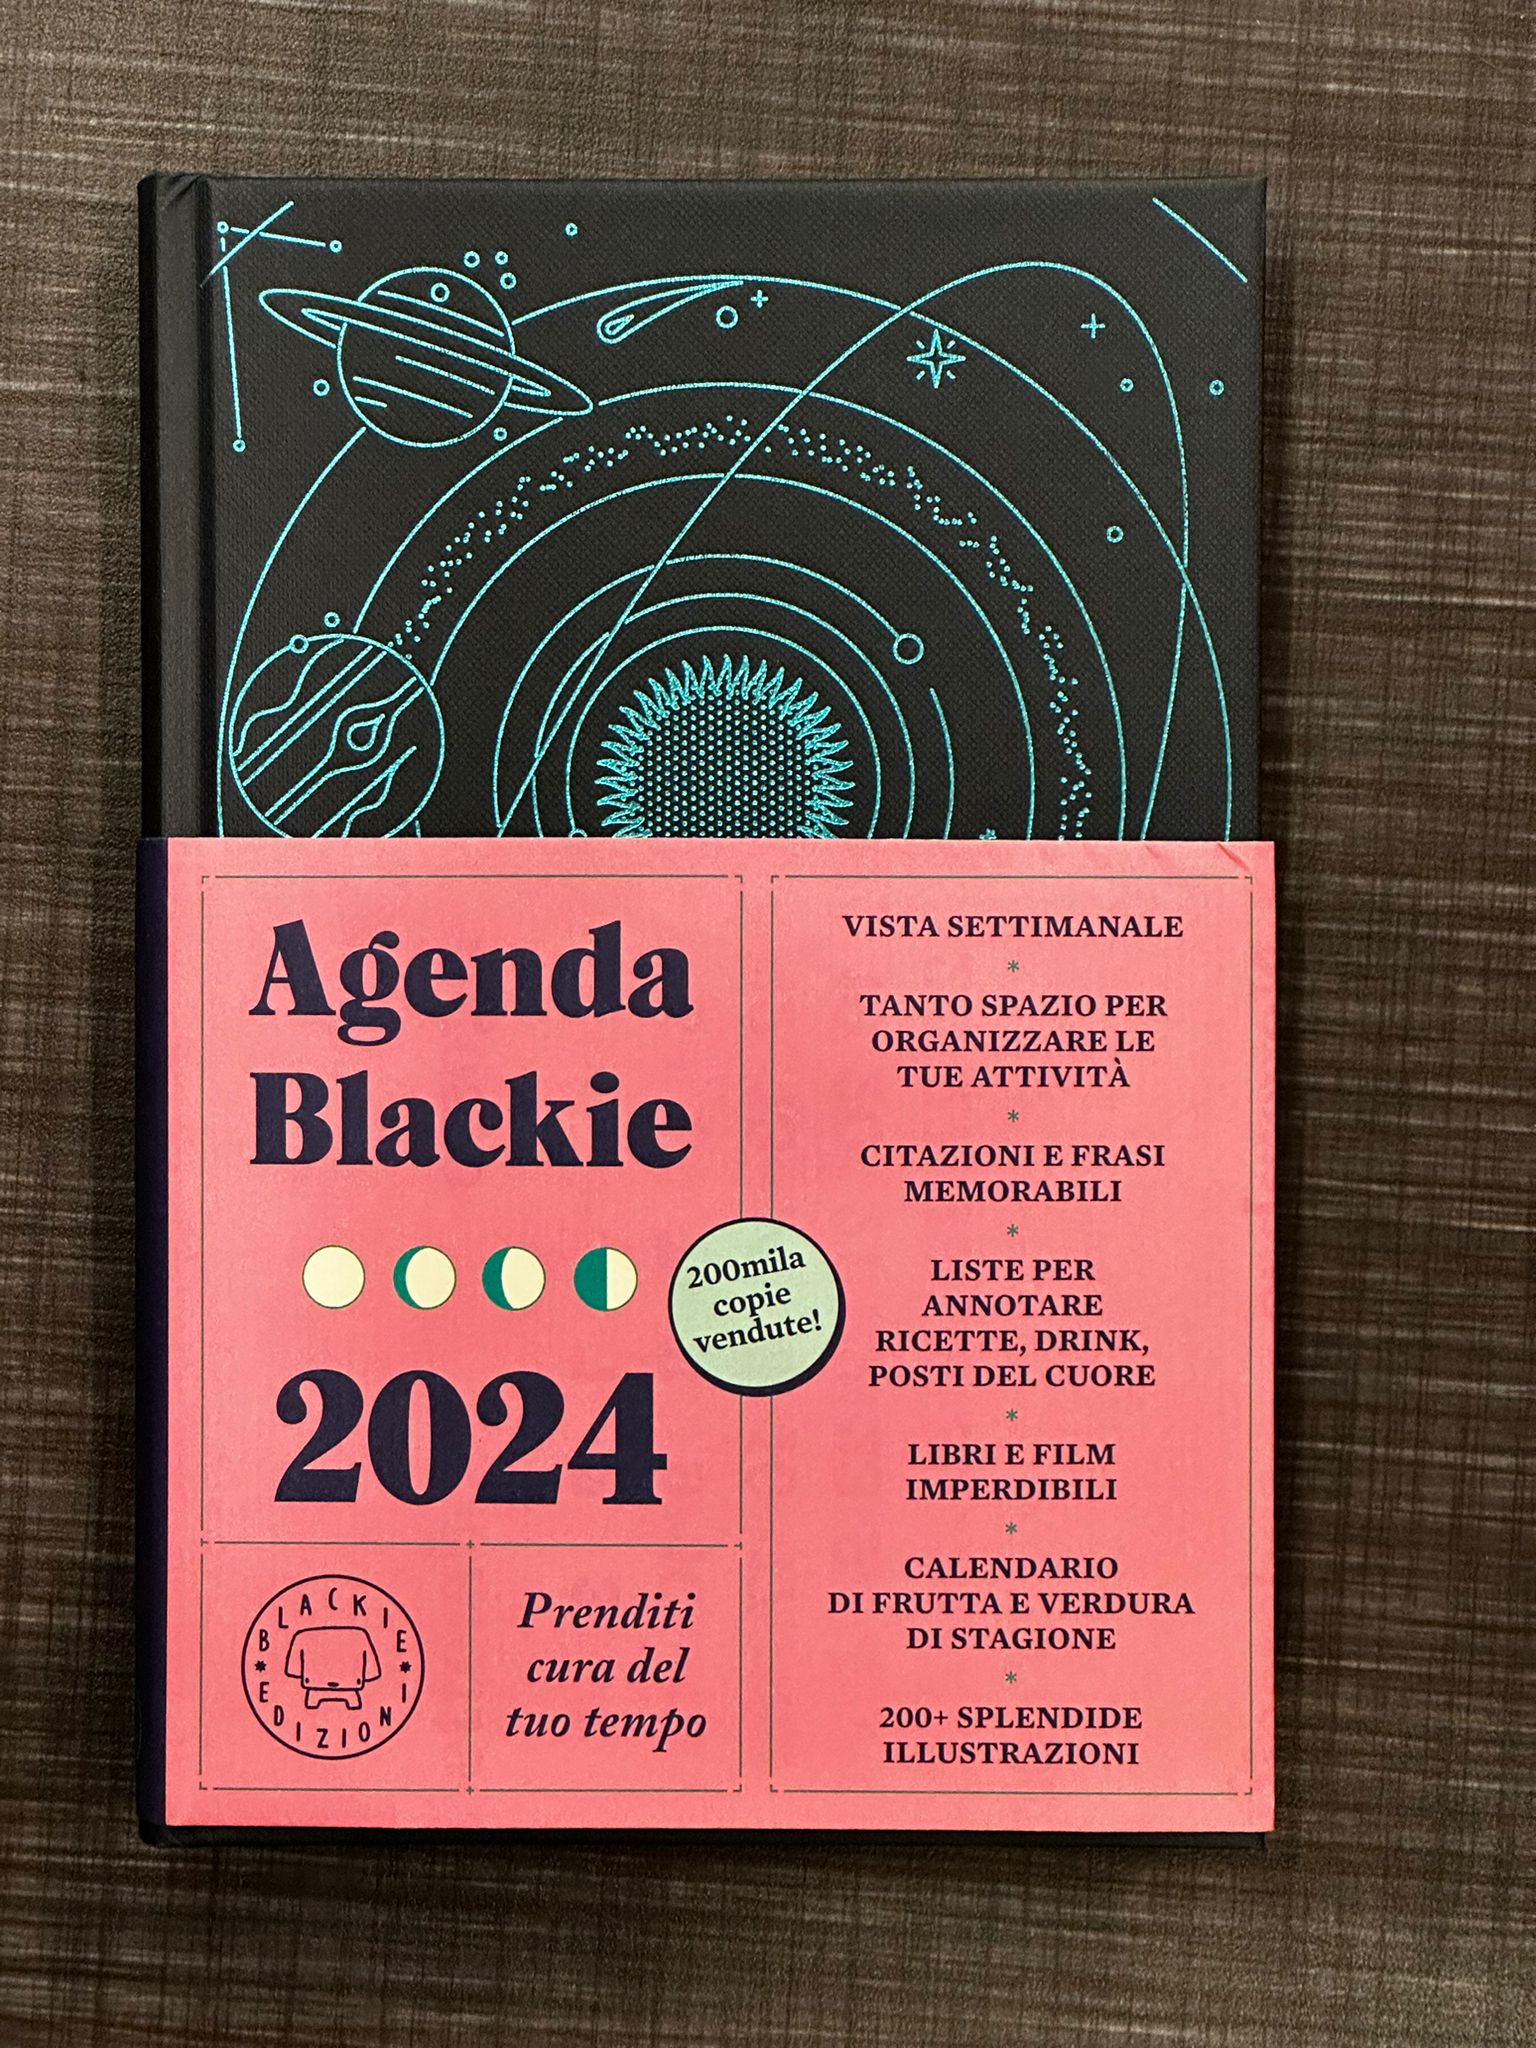 Agenda Blackie 2024 – I libri di Eppi